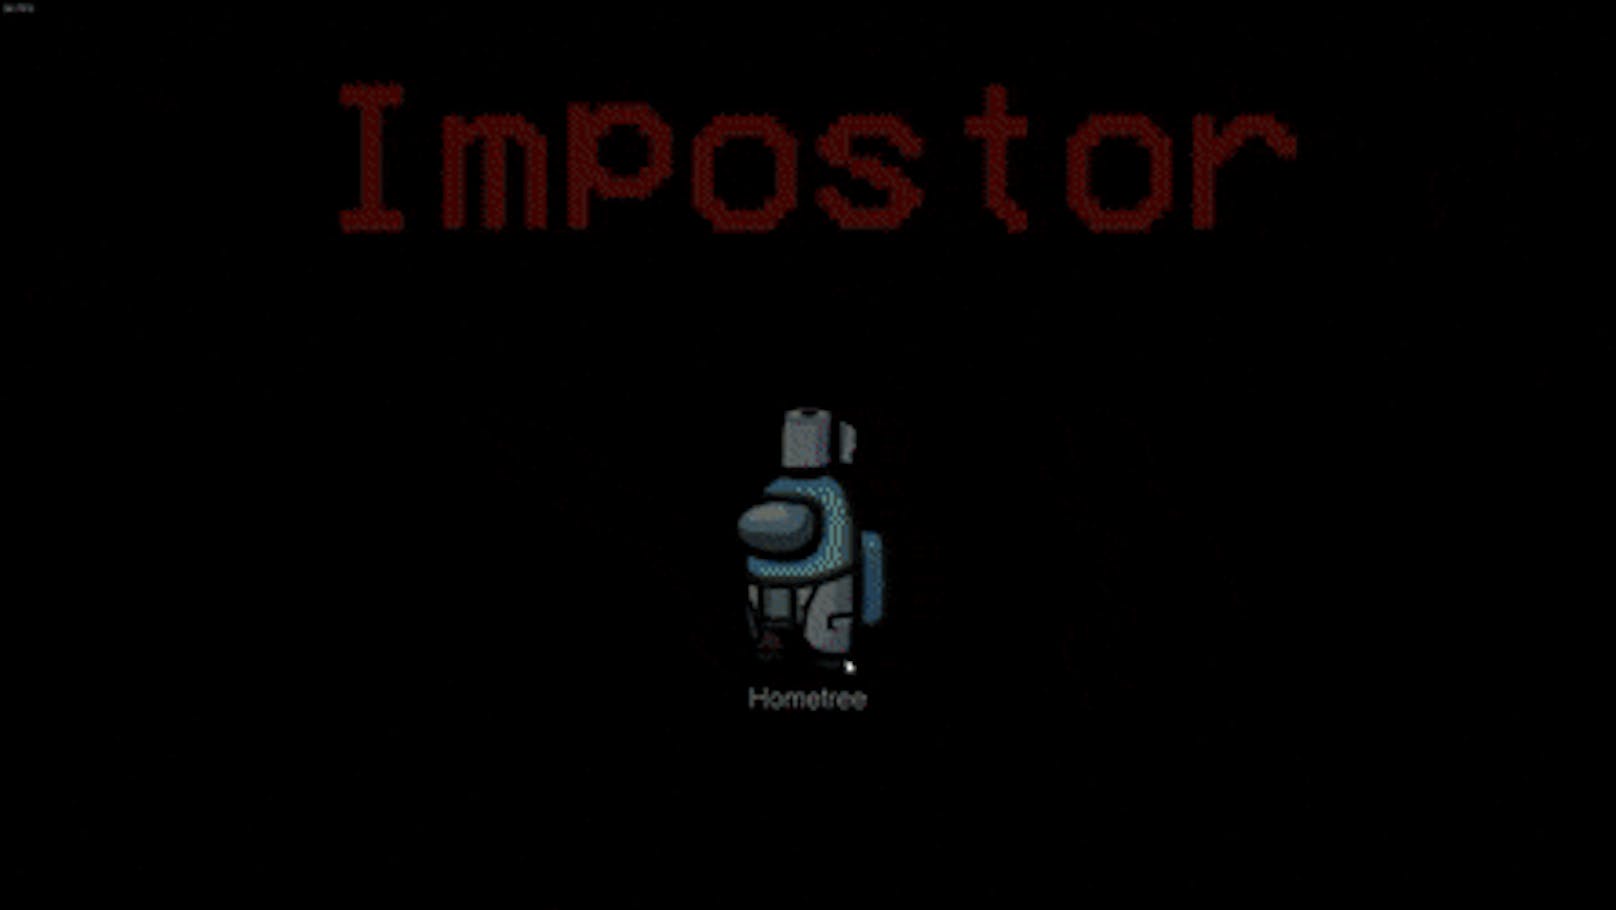 Der Impostor – auf Deutsch Hochstapler oder Betrüger – sabotiert die Crewmitglieder und versucht, diese heimlich auszuschalten.